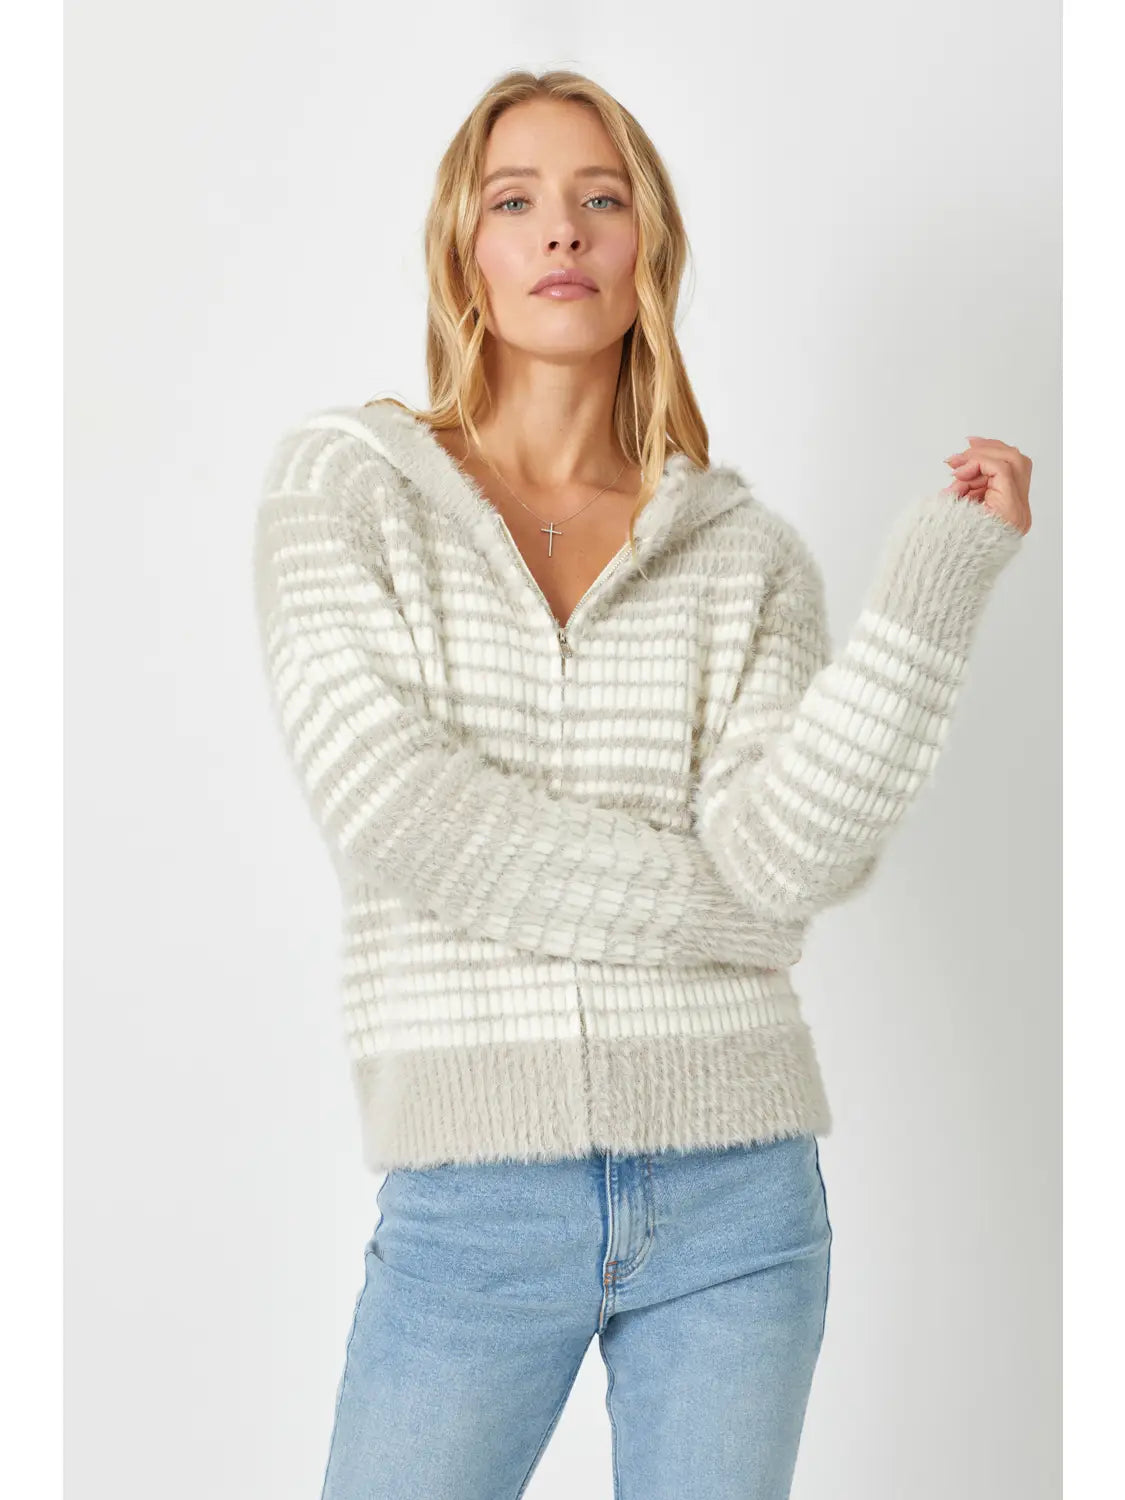 Emilee Striped Zip Up Sweater